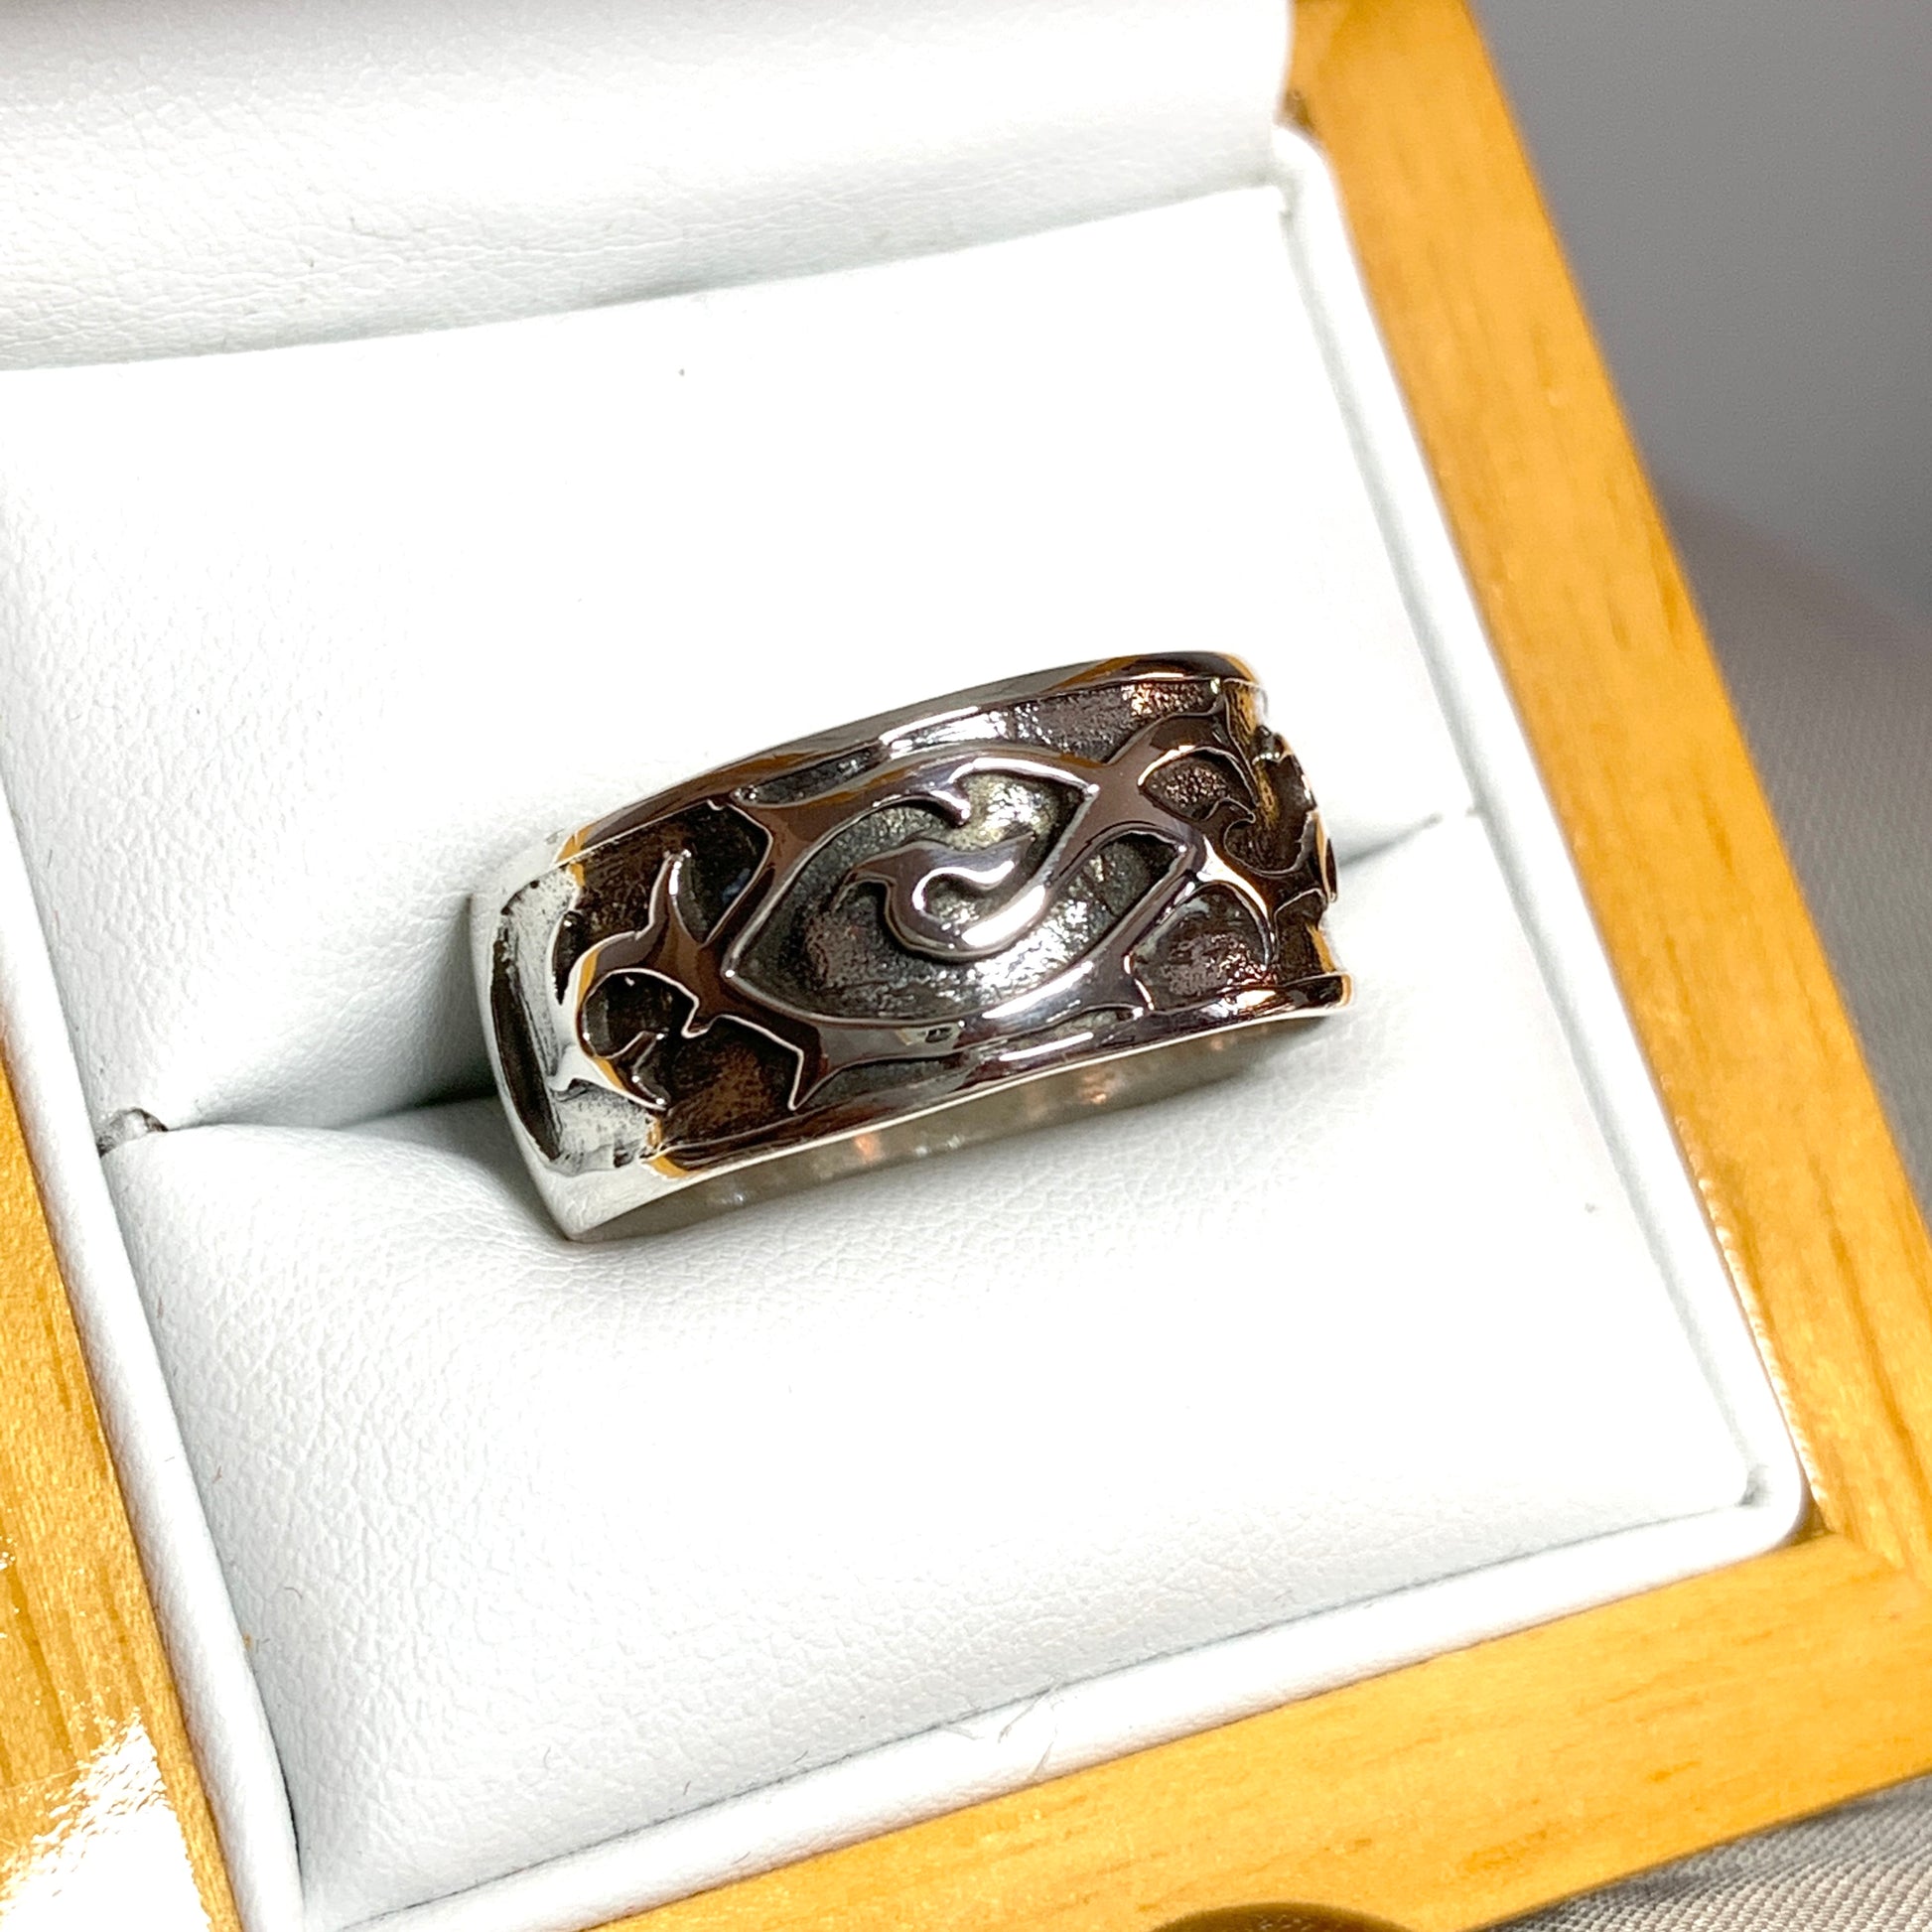 Men's Celtic ring sterling silver 9.5 mm